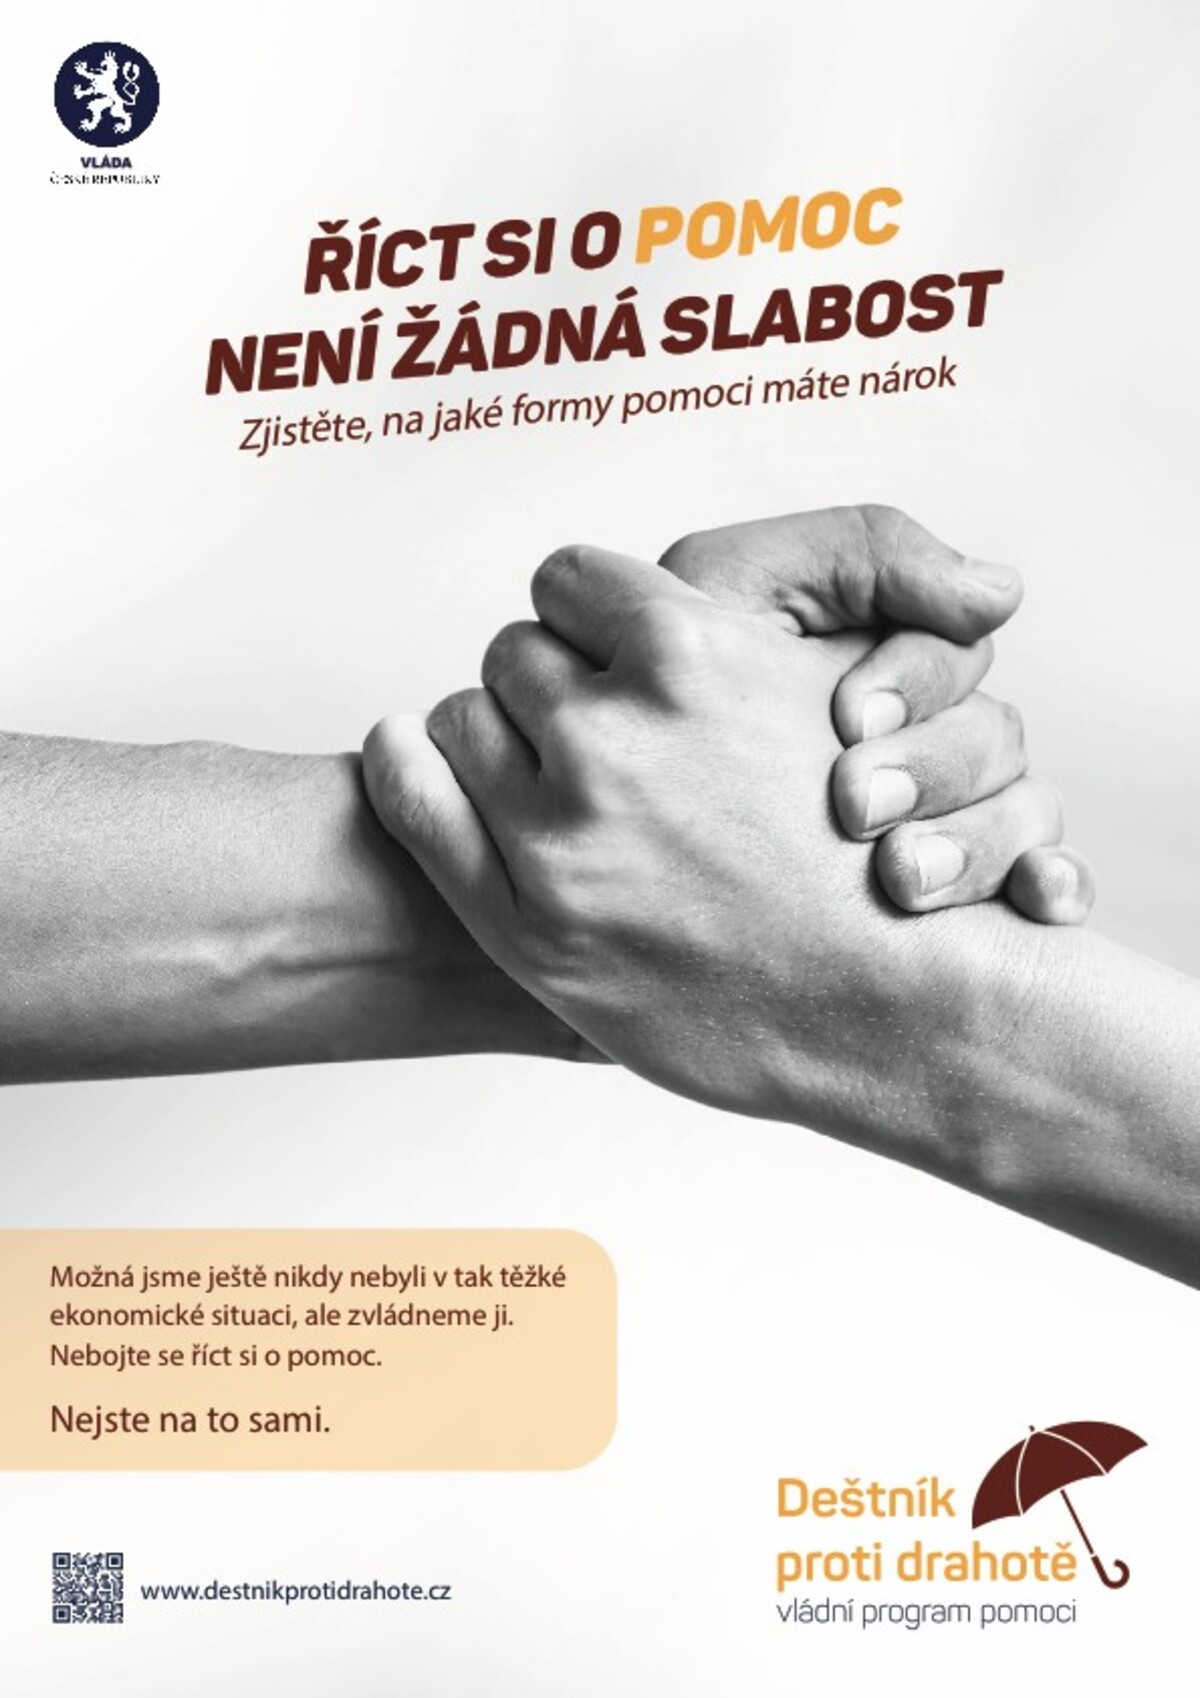 Ukázka vizuálu nové kampaně české vlády.